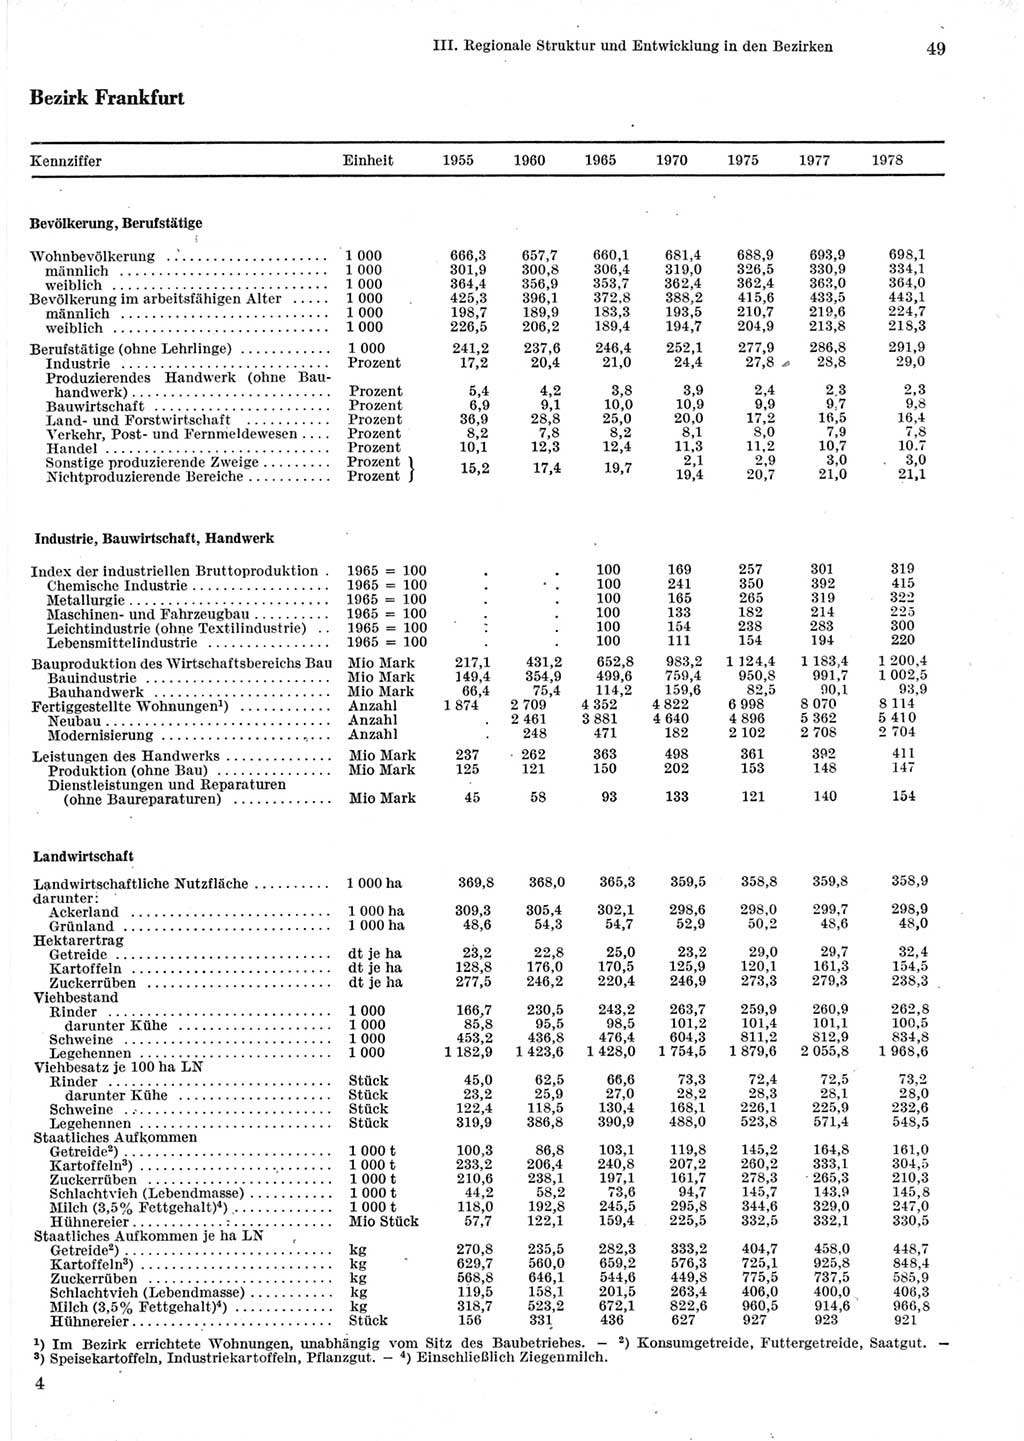 Statistisches Jahrbuch der Deutschen Demokratischen Republik (DDR) 1979, Seite 49 (Stat. Jb. DDR 1979, S. 49)